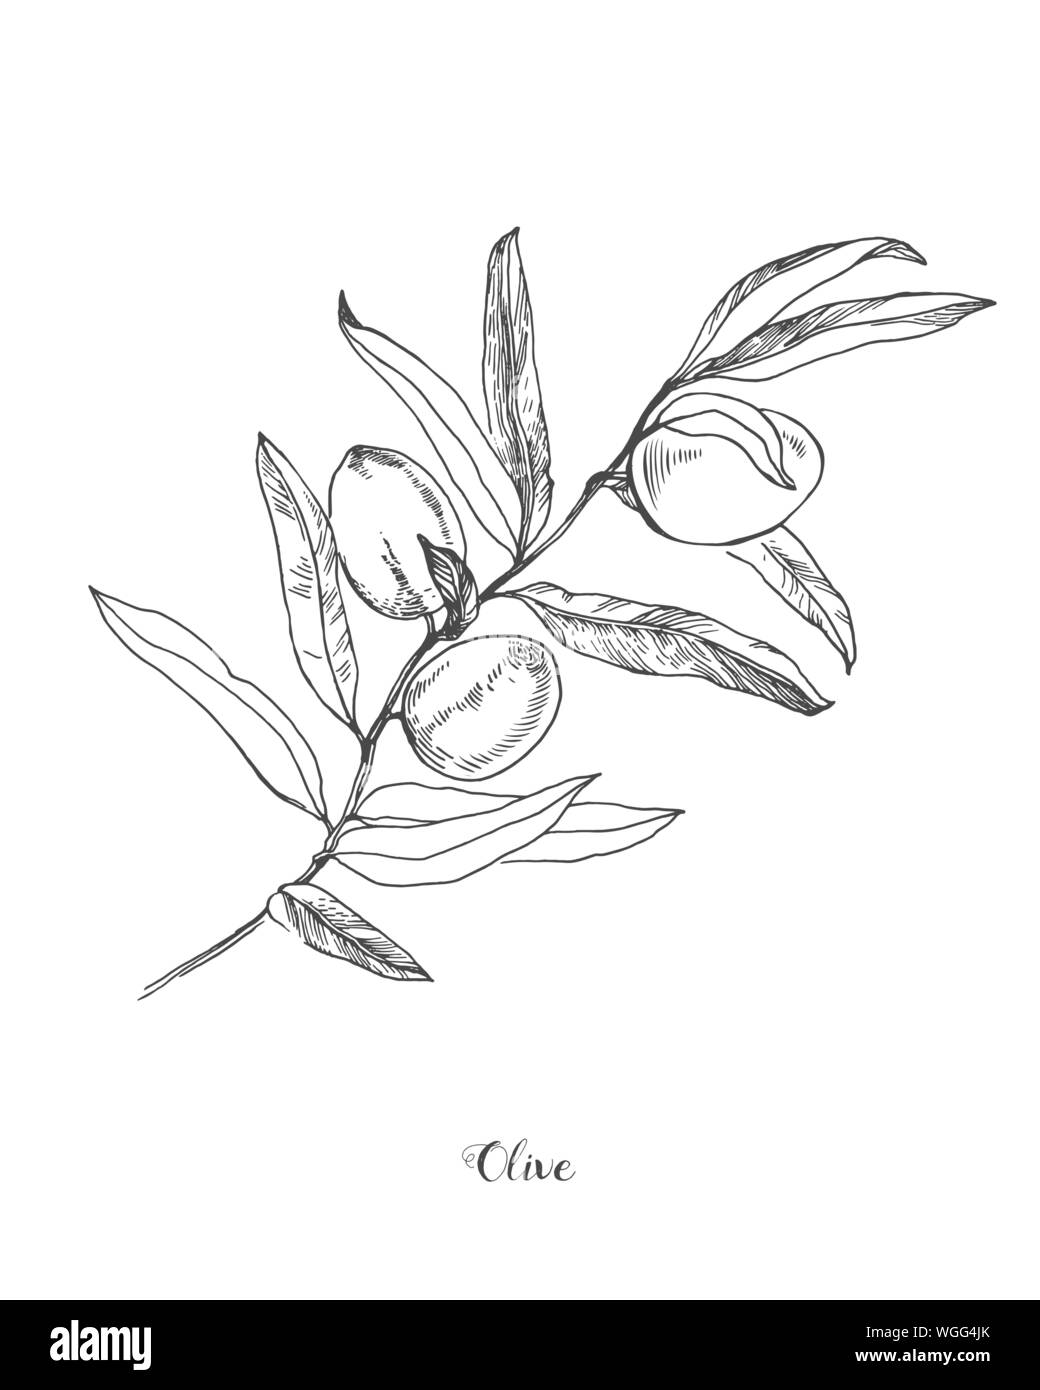 Dettagliata disegnati a mano vector in bianco e nero illustrazione delle olive con foglie. Illustrazione botanica delle olive branch Illustrazione Vettoriale